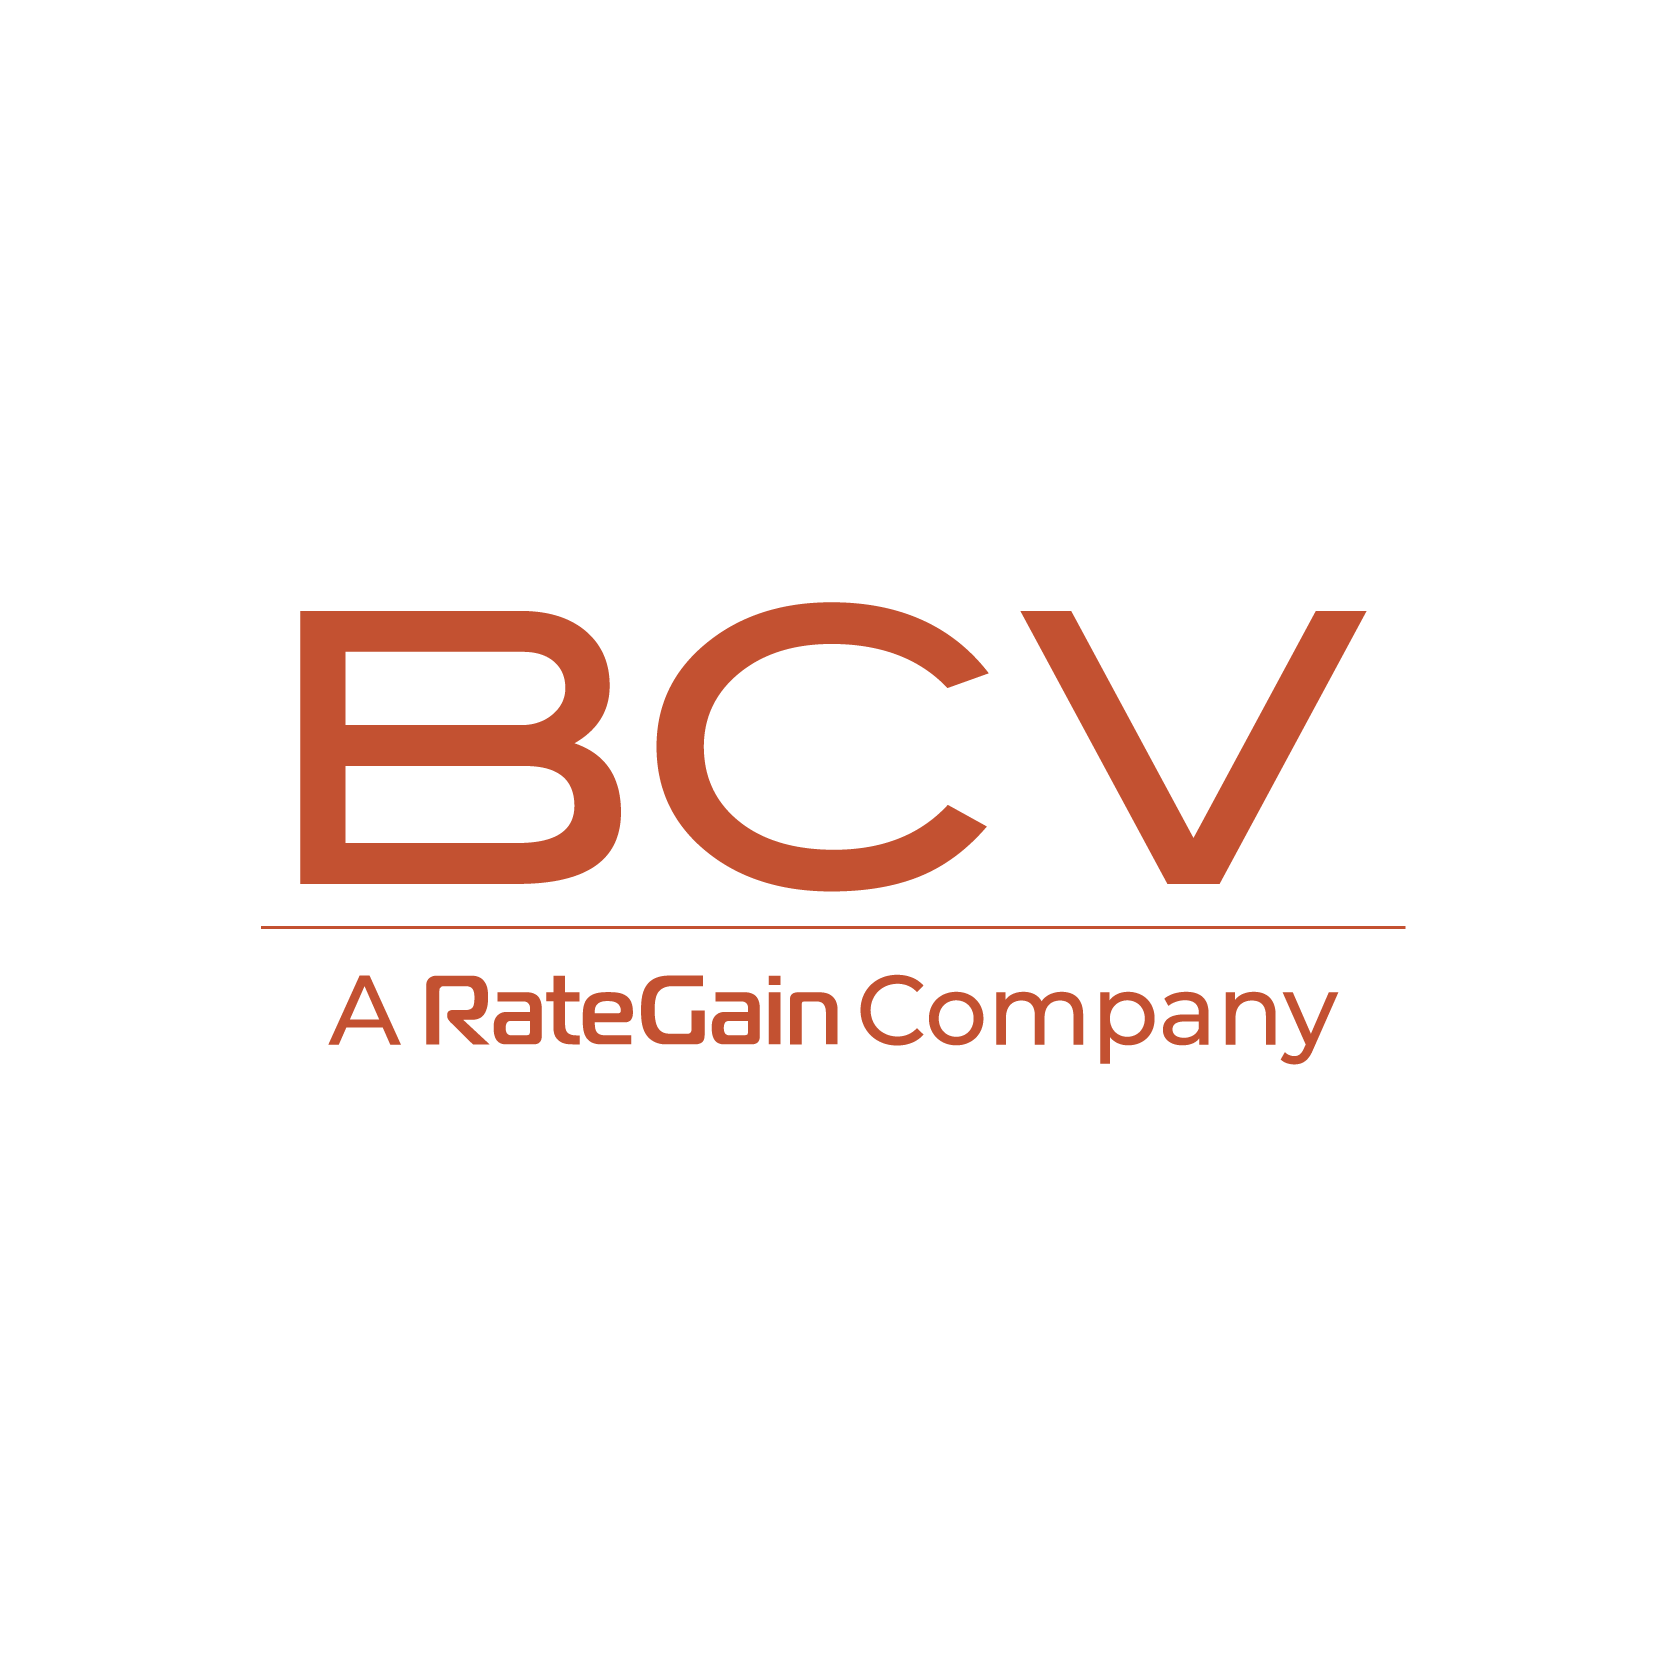 BCV, A RateGain Company